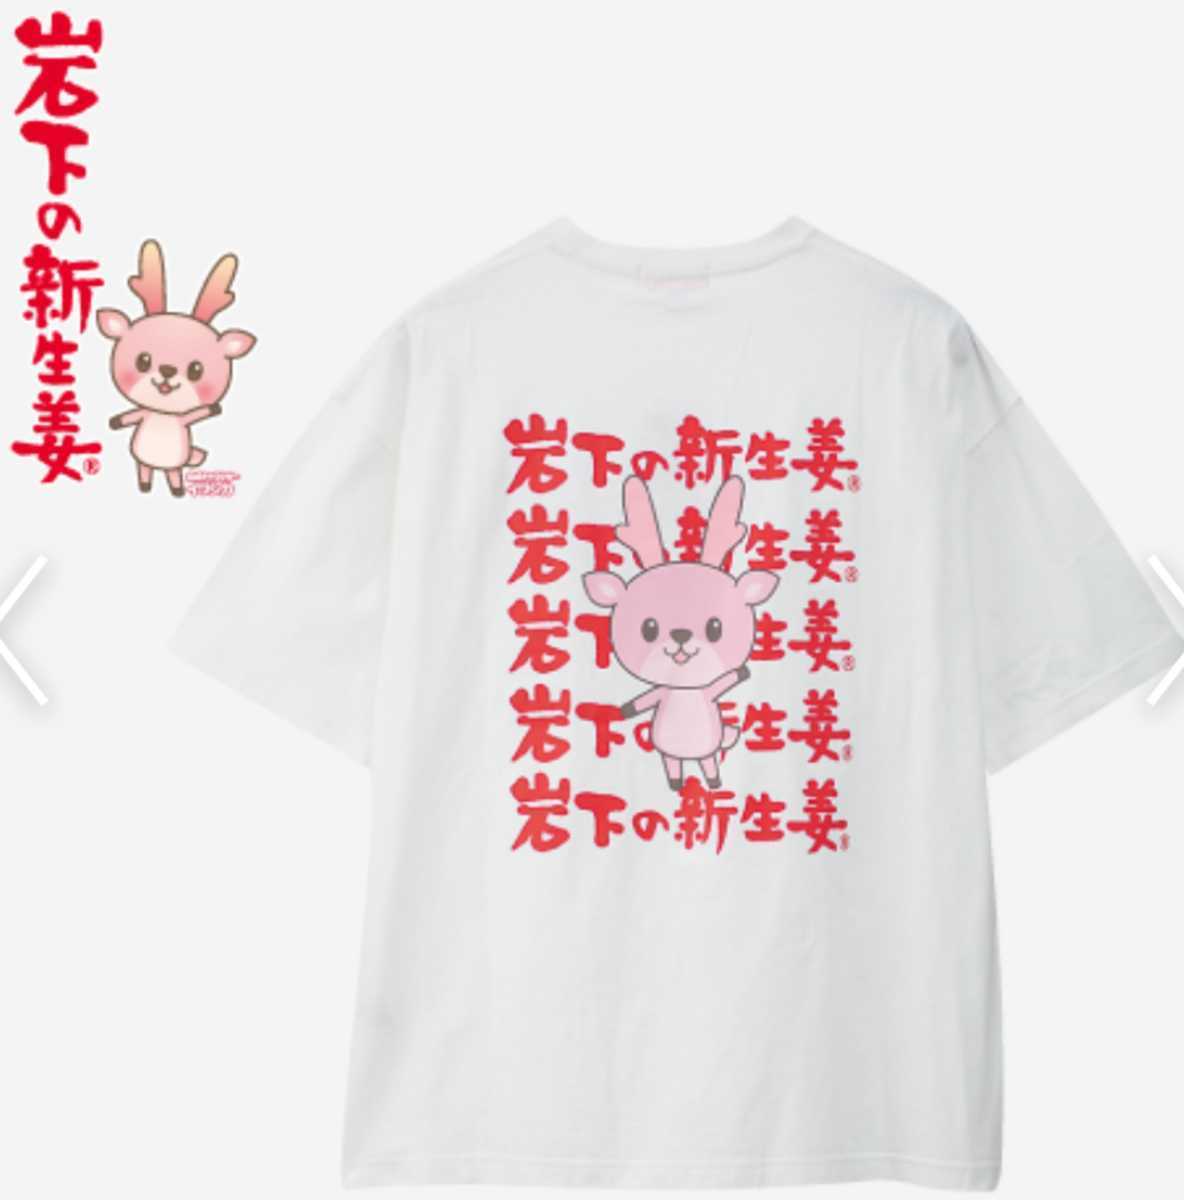 1109円 好きに 高校野球 甲子園 第104回千葉県大会 記念Tシャツ Lサイズ 非売品 新品